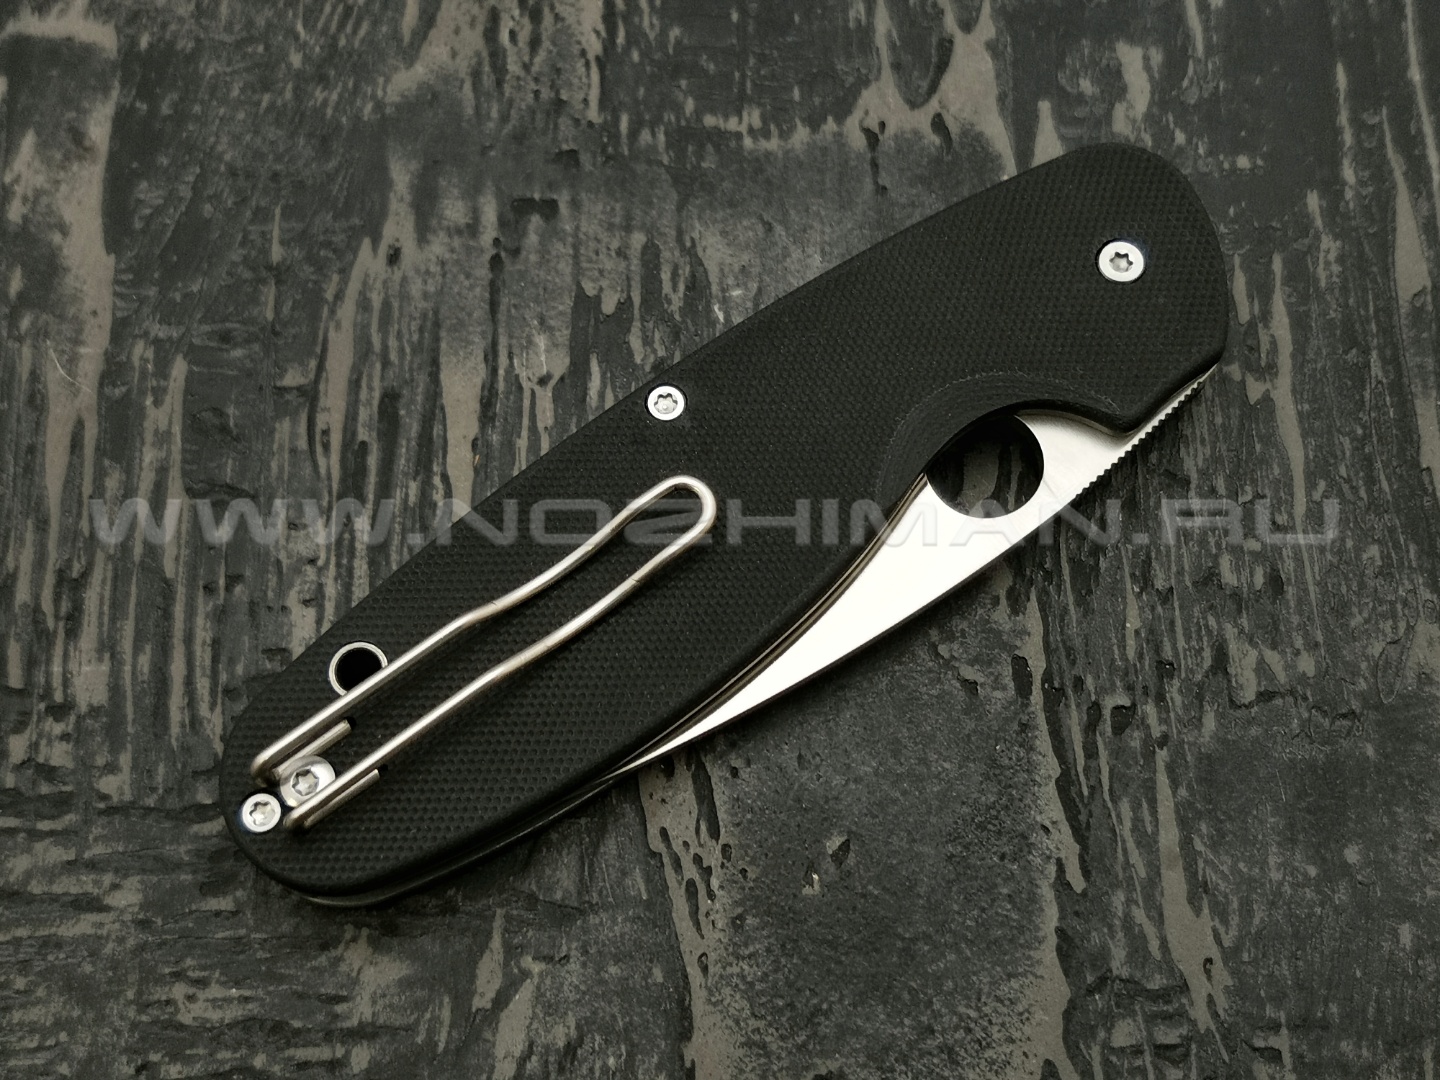 Нож Spyderco Emphasis Plain C245GP, сталь 8Cr13MoV satin, рукоять G10 black